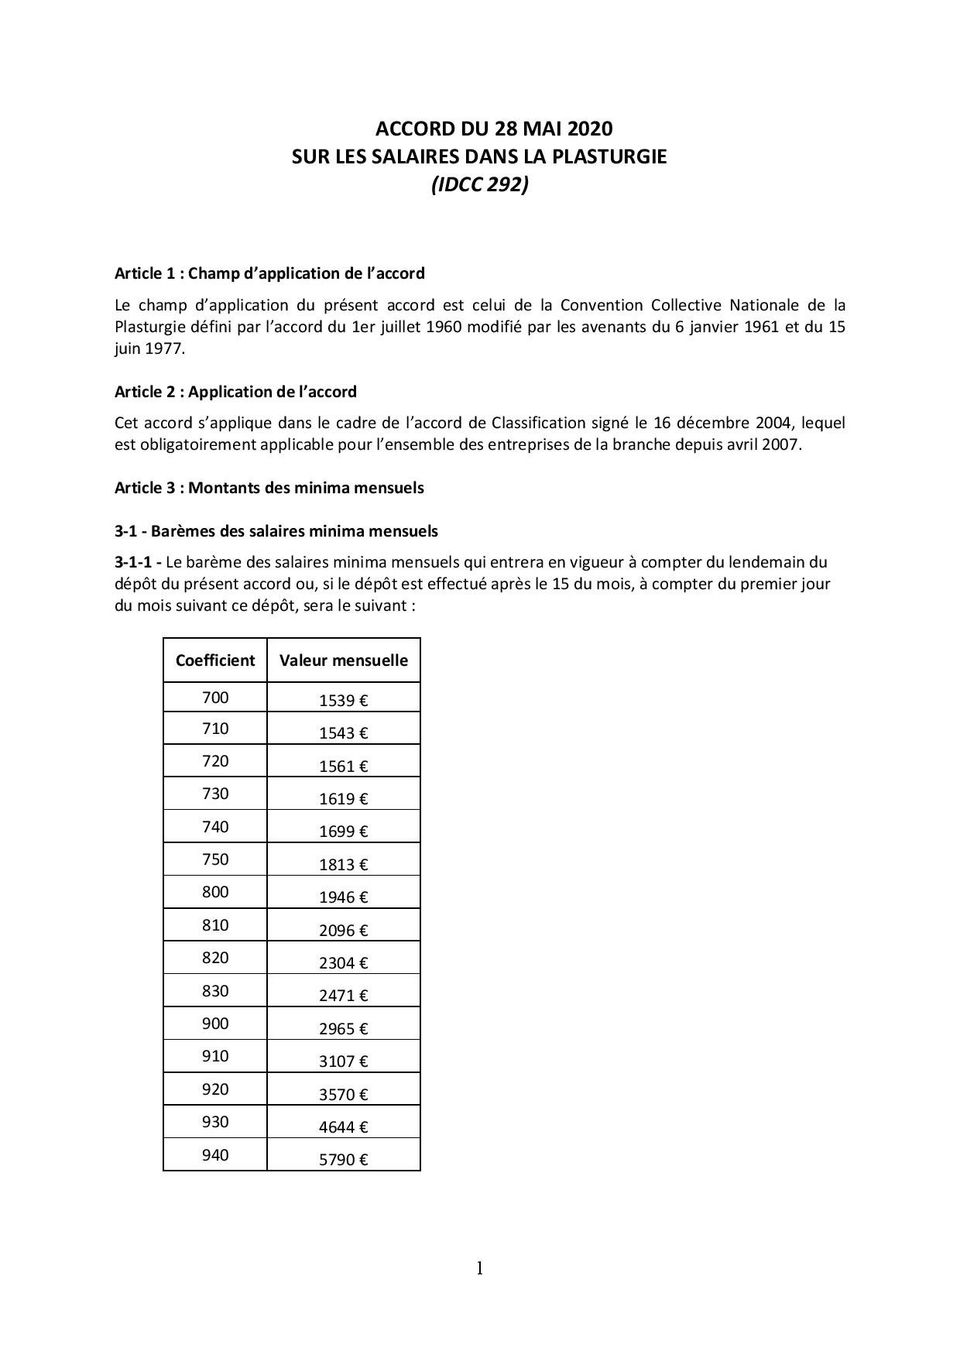 accord-salaires-minimas-plasturgie-signature-électronique-2020-page-1